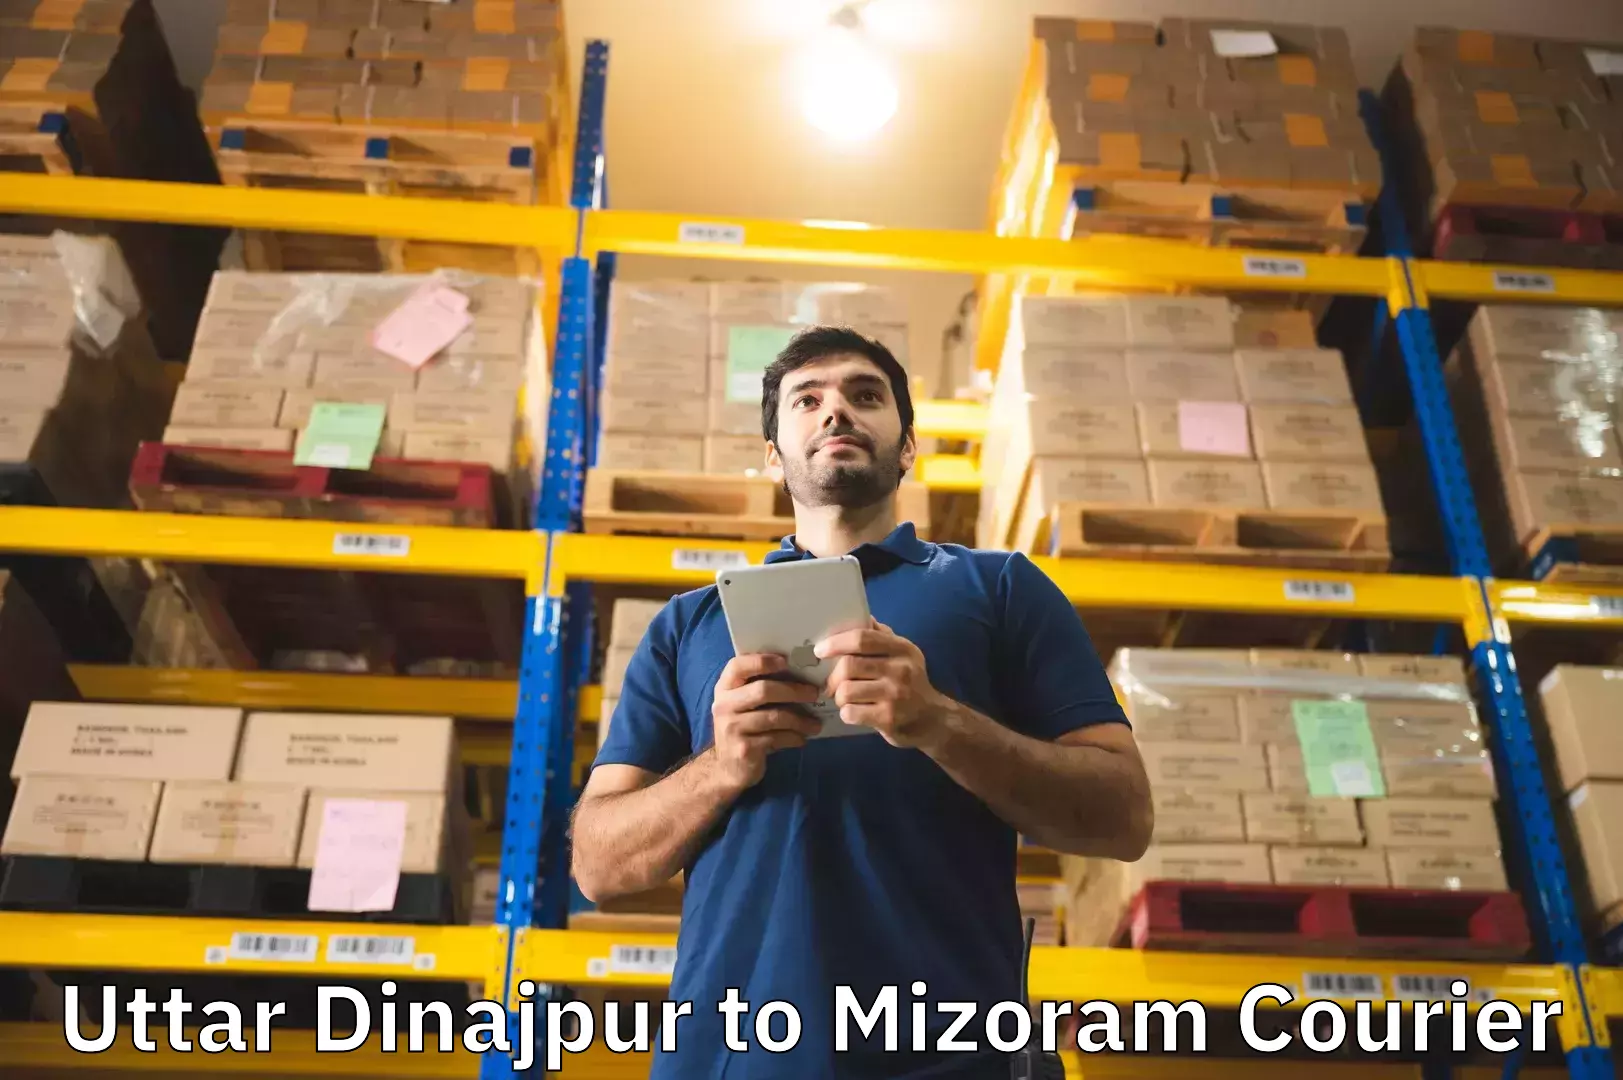 Baggage courier advice Uttar Dinajpur to Mizoram